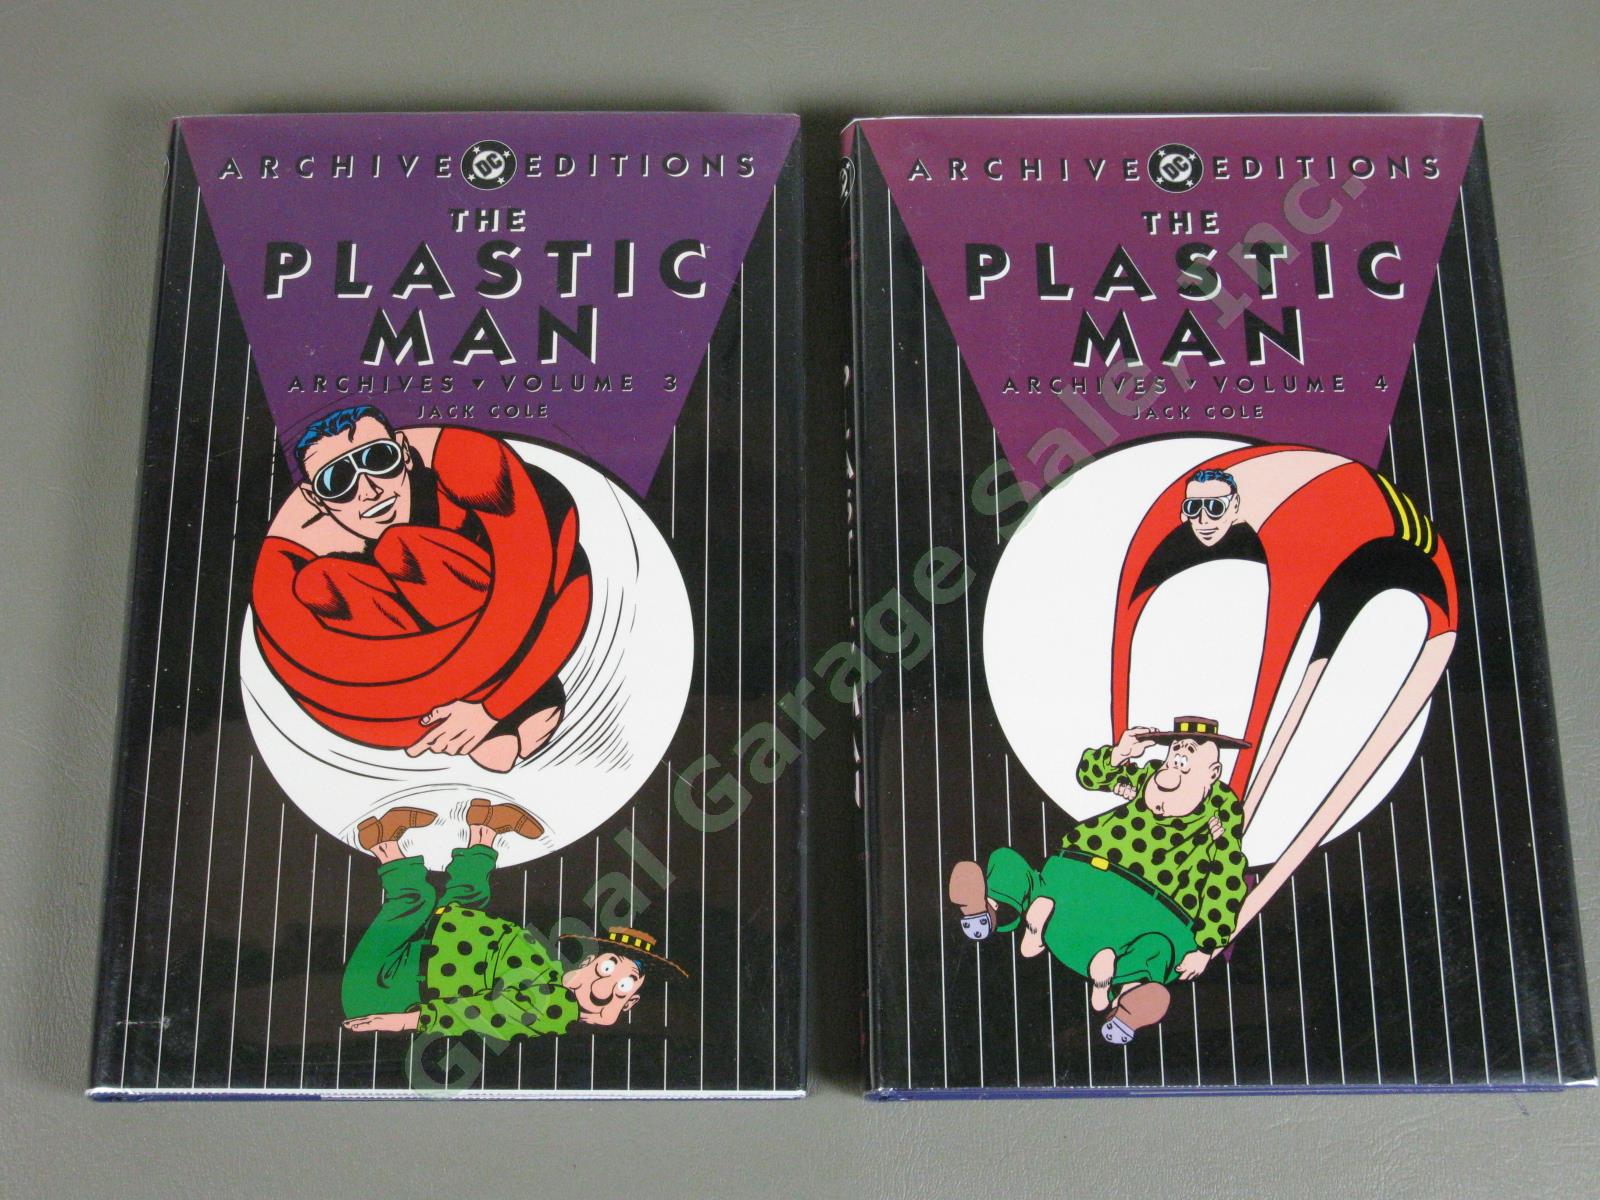 NEW DC Archives Plastic Man Volumes 1-8 Complete Comic Book Set Jack Cole MINT 7